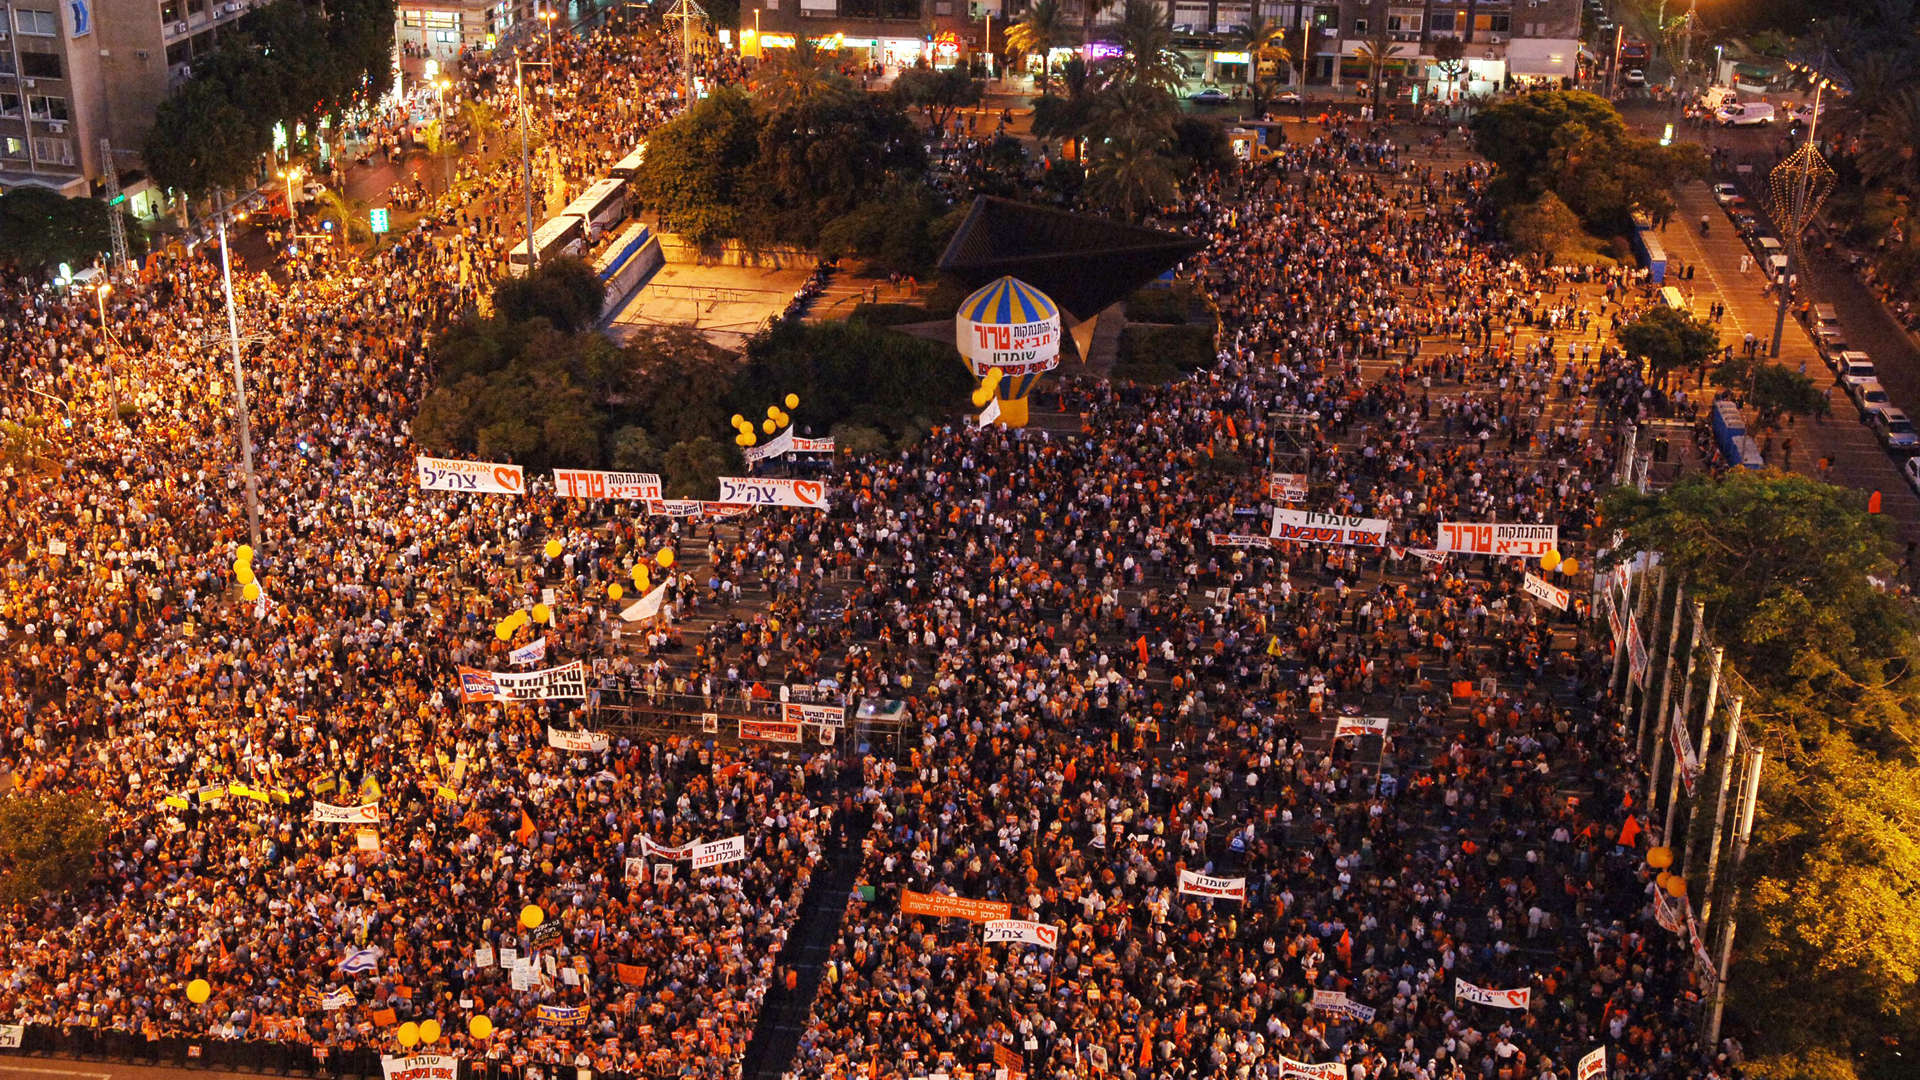 Mehrfach demonstrierten zehntausende Menschen gegen den Abkopplungsplan, wie hier am 11. August 2005 auf dem Rabin-Platz in Tel Aviv.